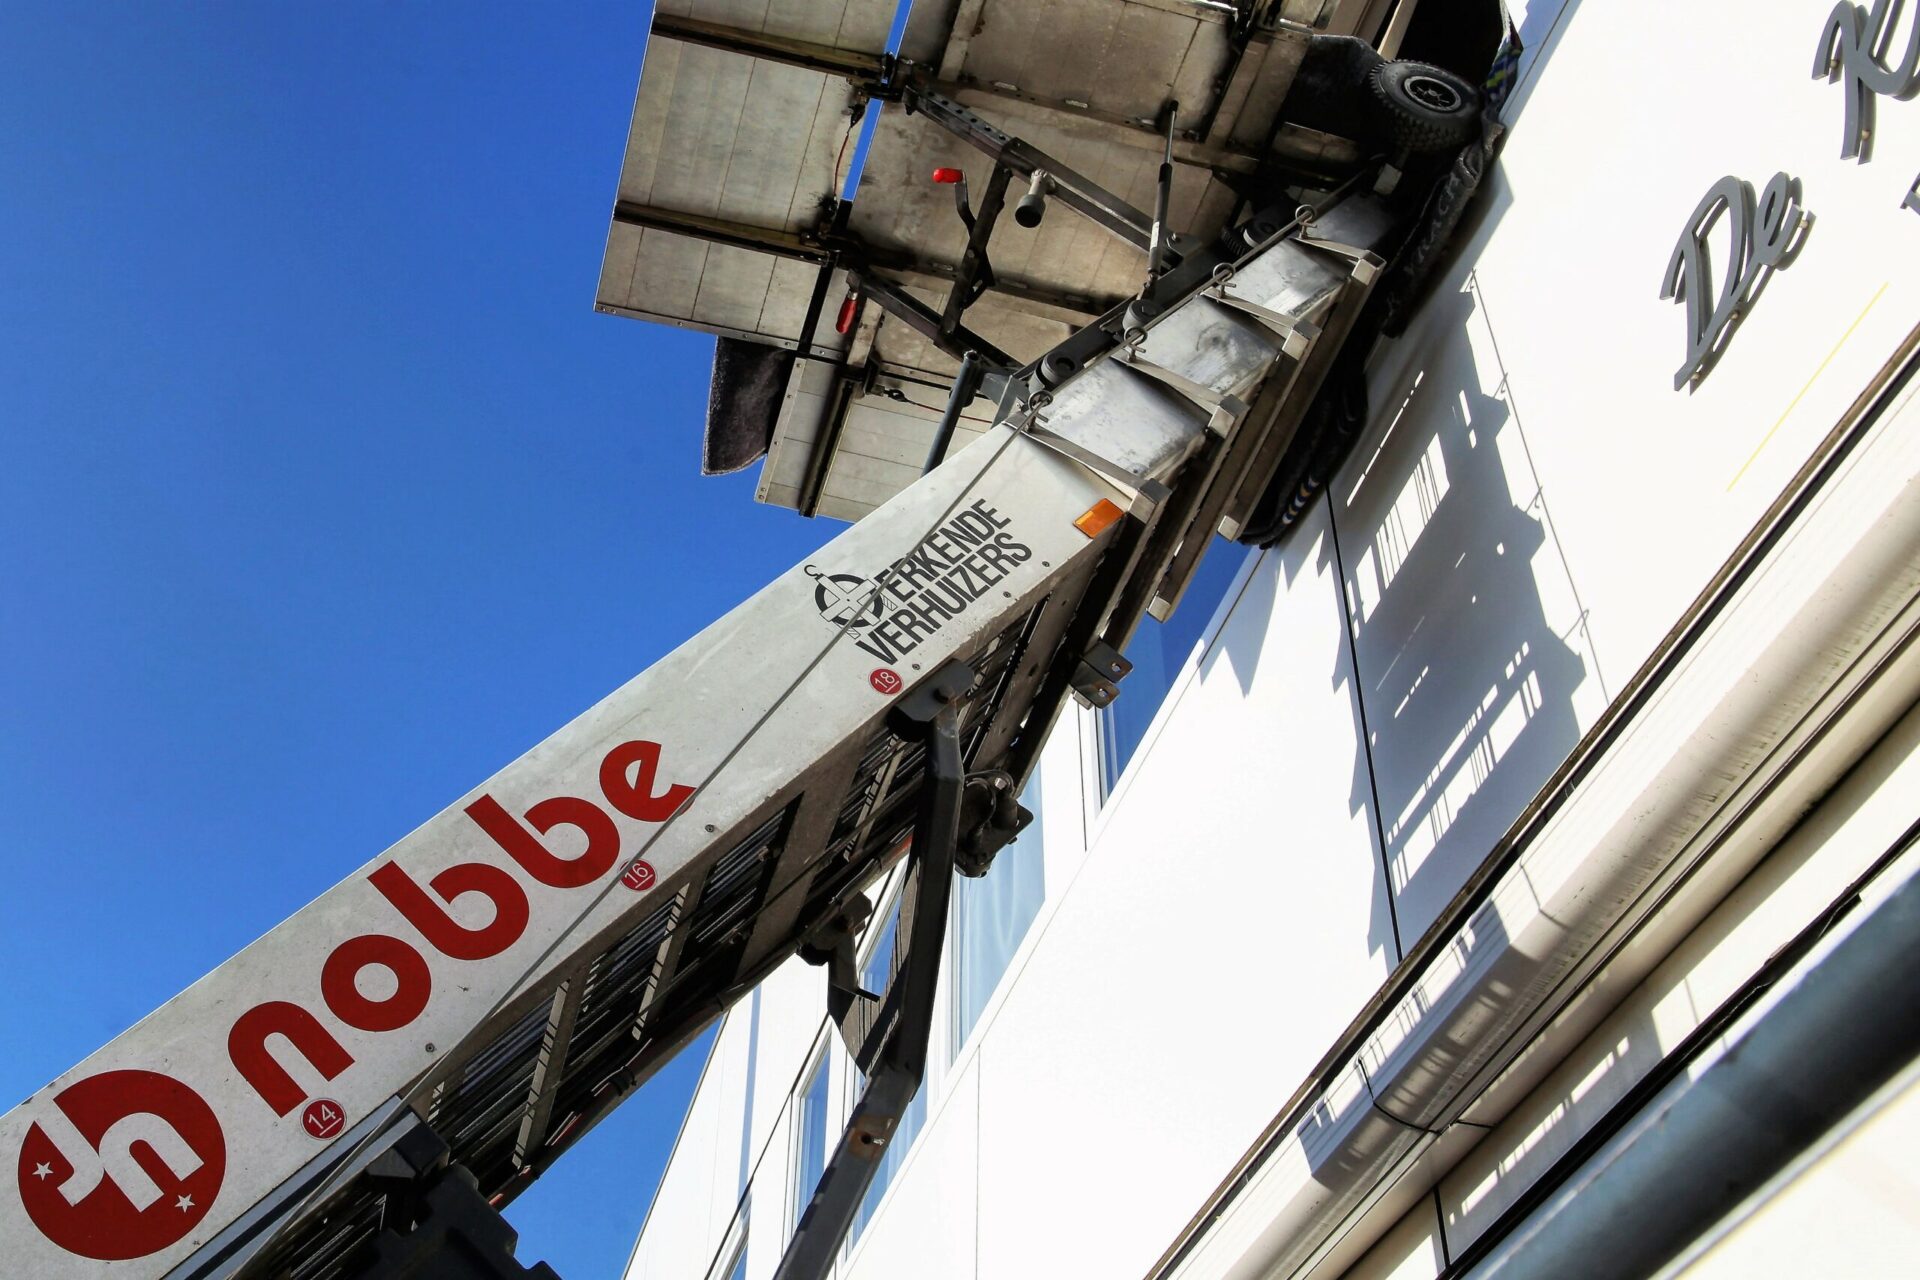 Een detail van de verhuislift van Verhuisbedrijf Nobbe met daarop het logo, de bedrijfsnaam en het logo van de brancheorganisatie Erkende Verhuizers.